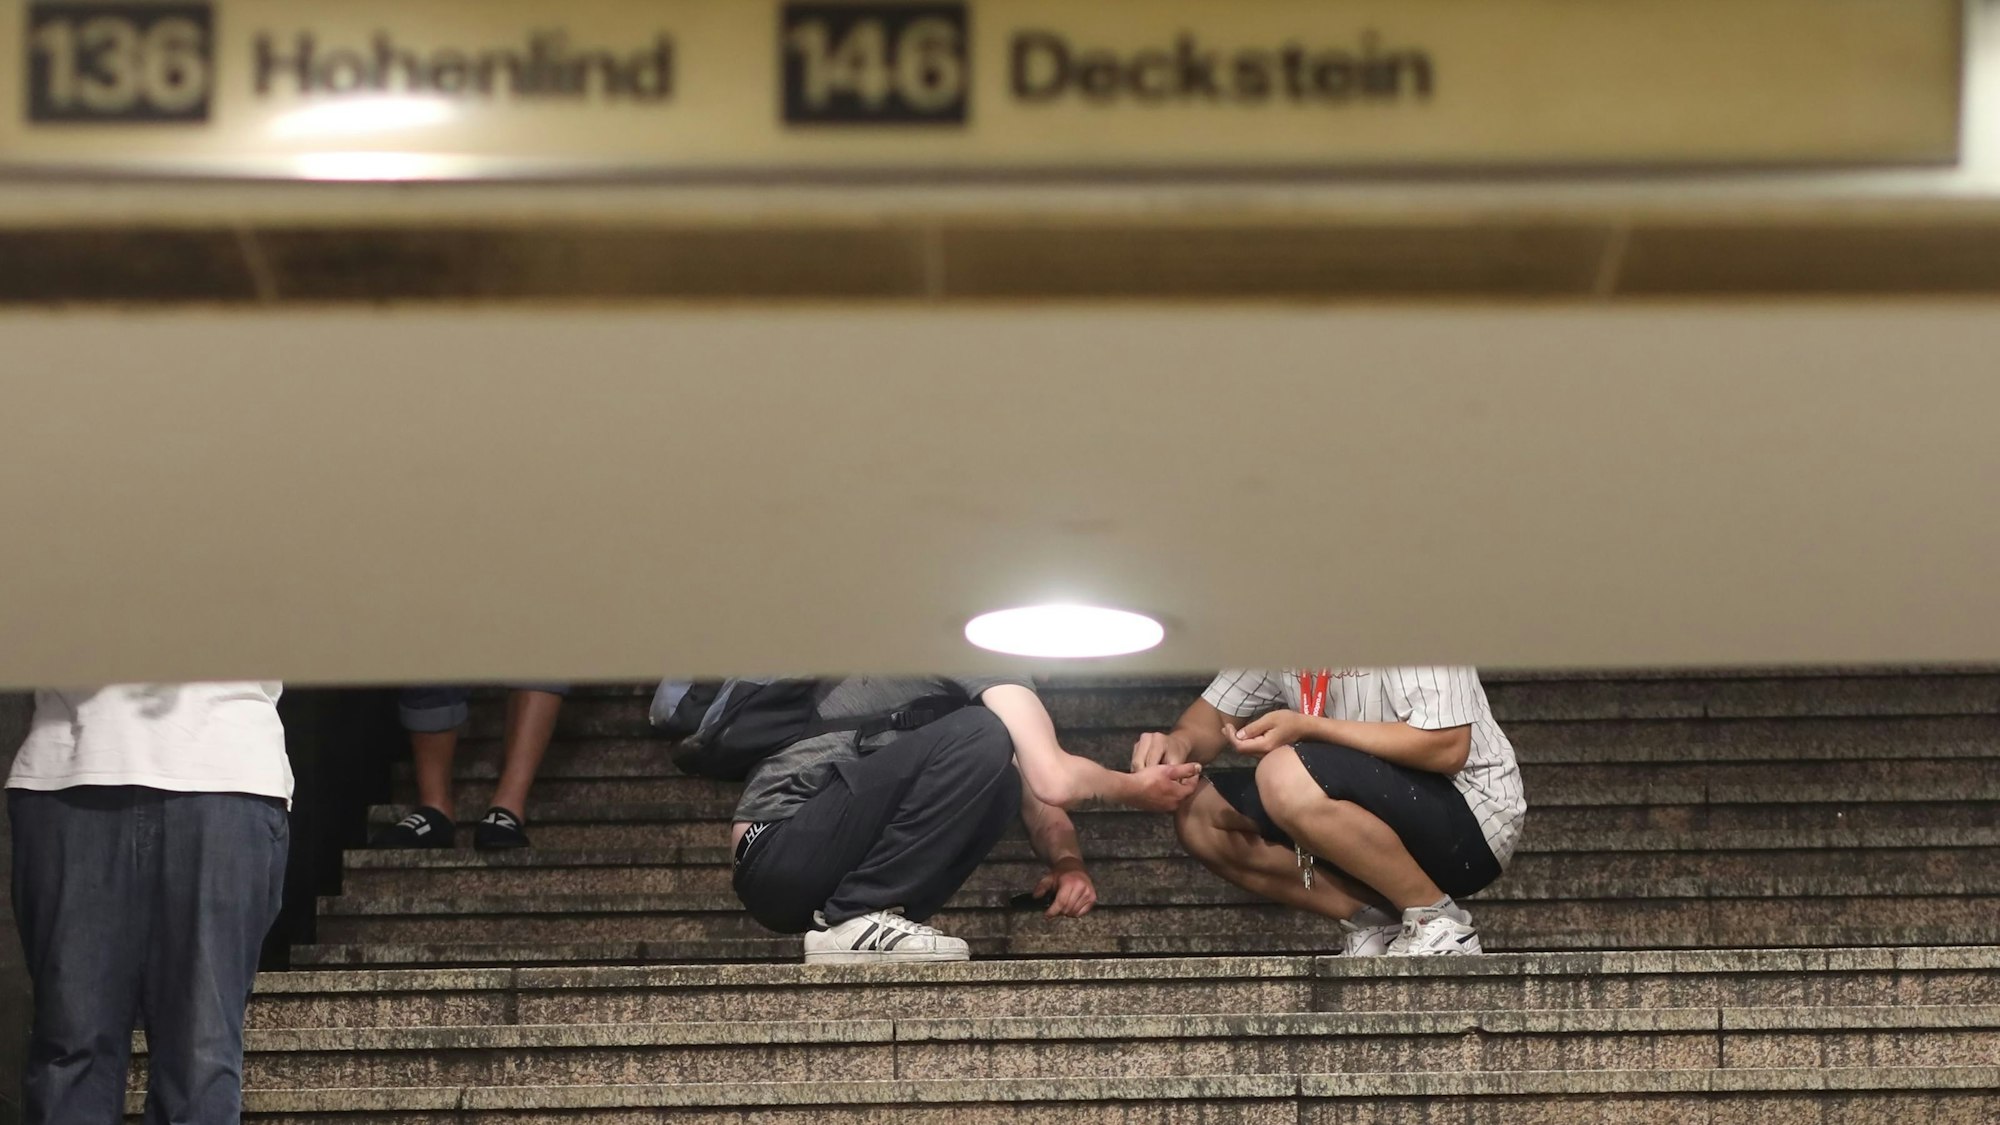 Zwei Passanten auf der Treppe zur U-Bahn: Hier findet scheinbar gerade ein Drogengeschäft statt.